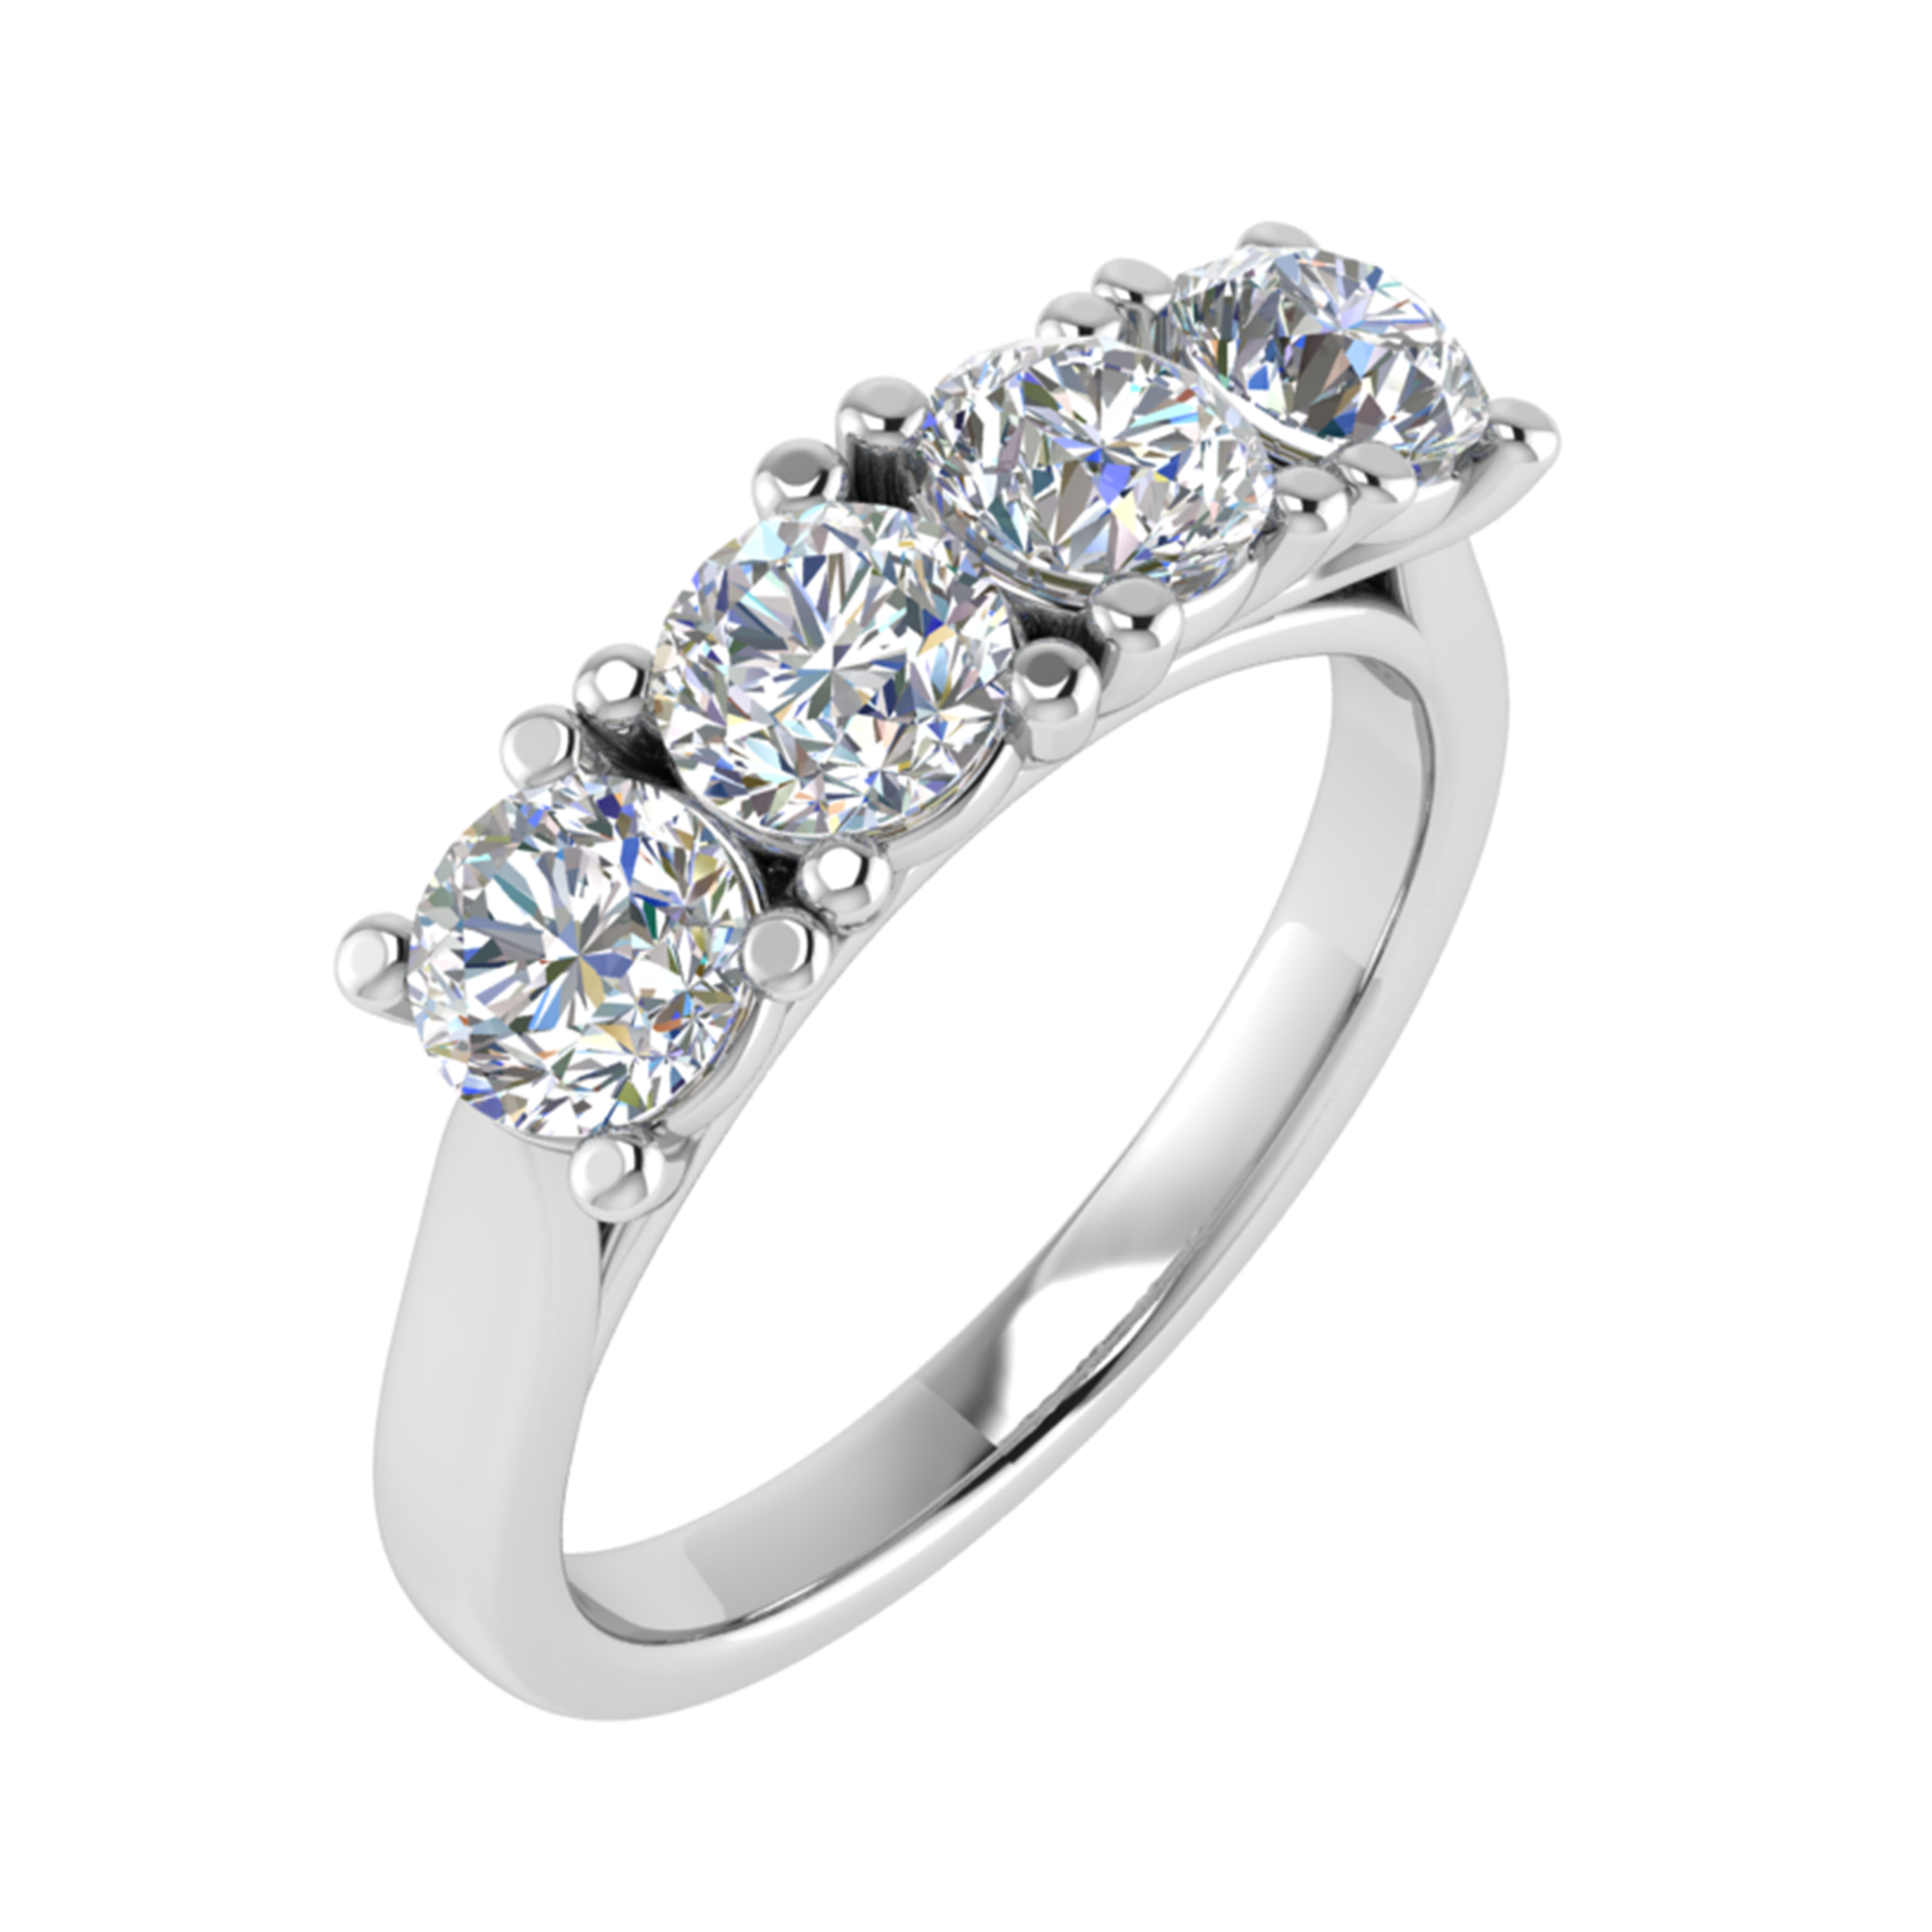 ADRX 13418 | Engagement Ring | Adori Millennium